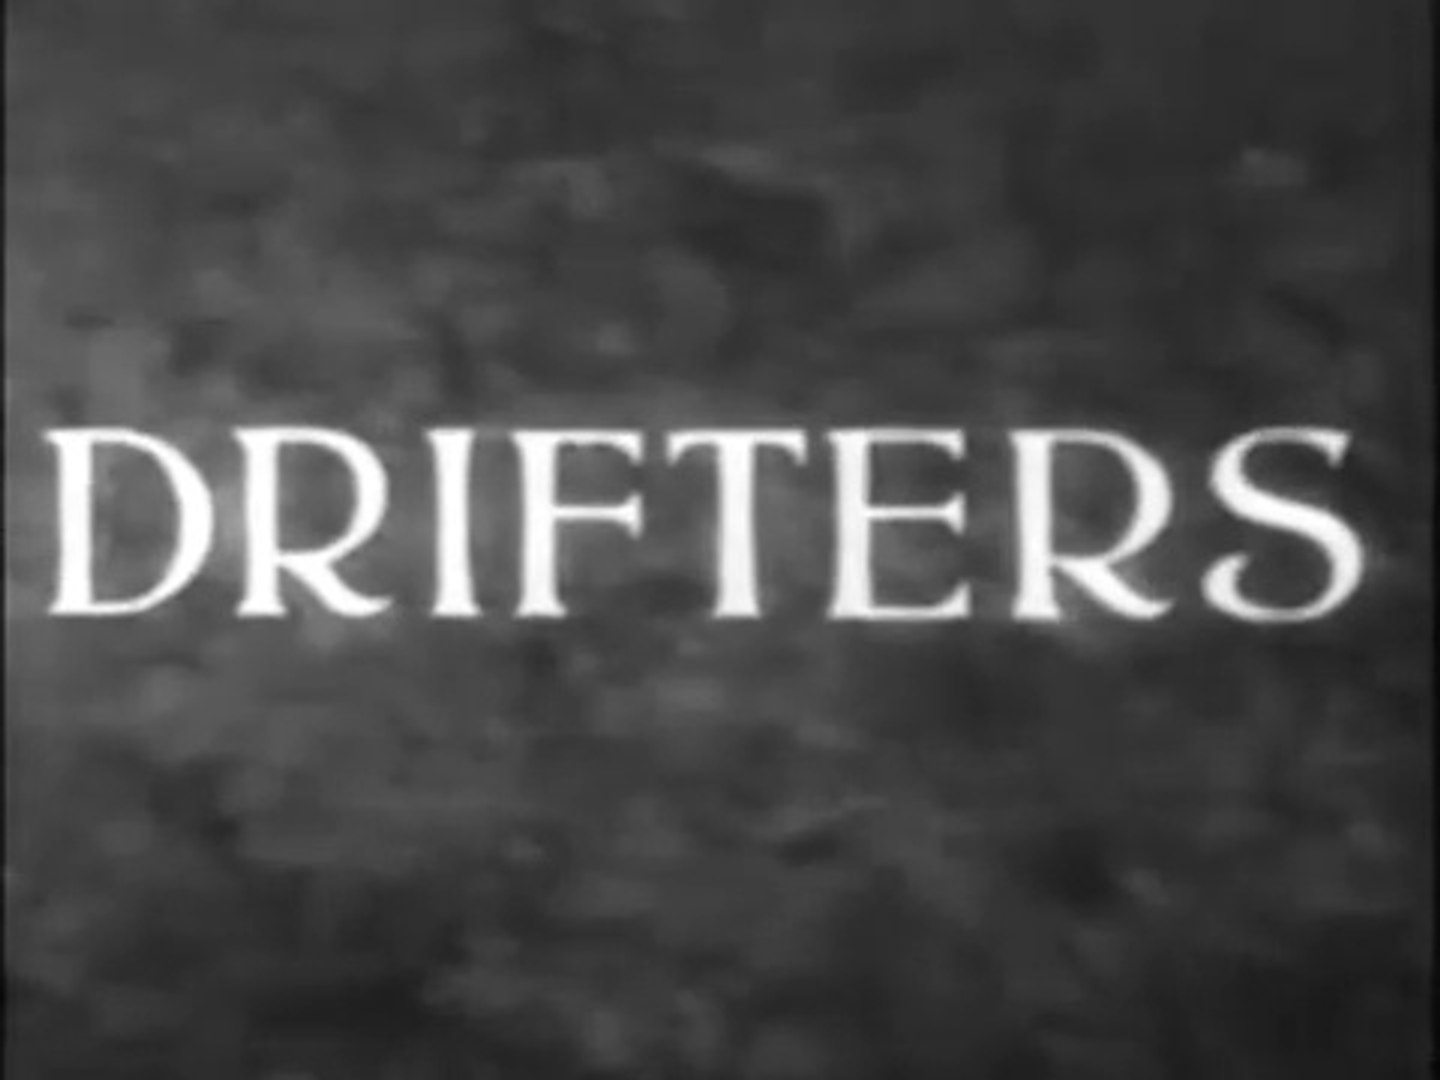 Drifters OAV, Anime 2013